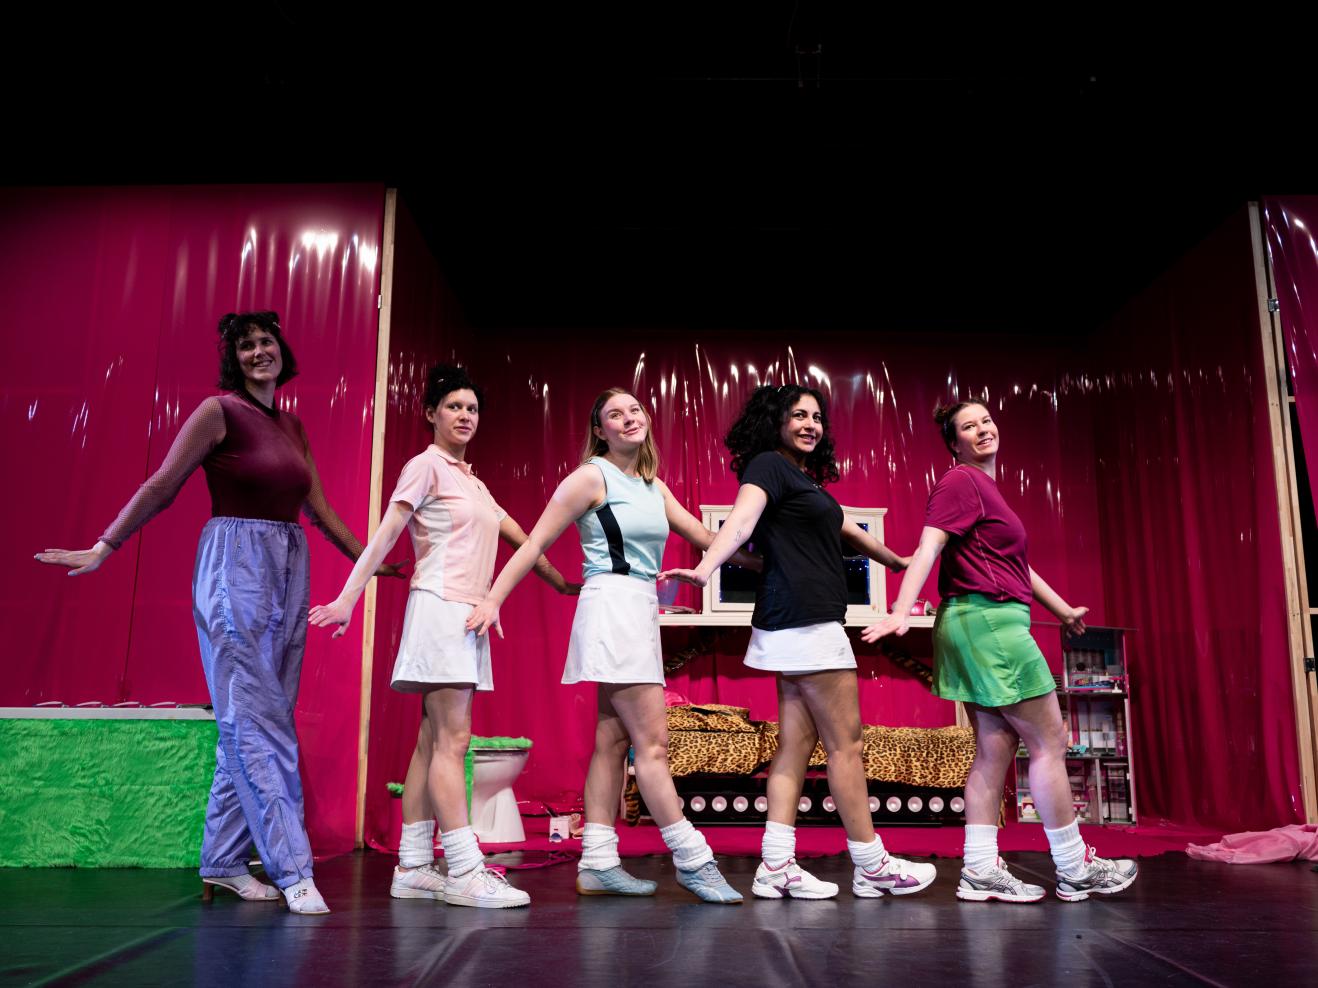 Fünf Frauen in einem pink-bunten Bühnenbild tanzen in einer Reihe.